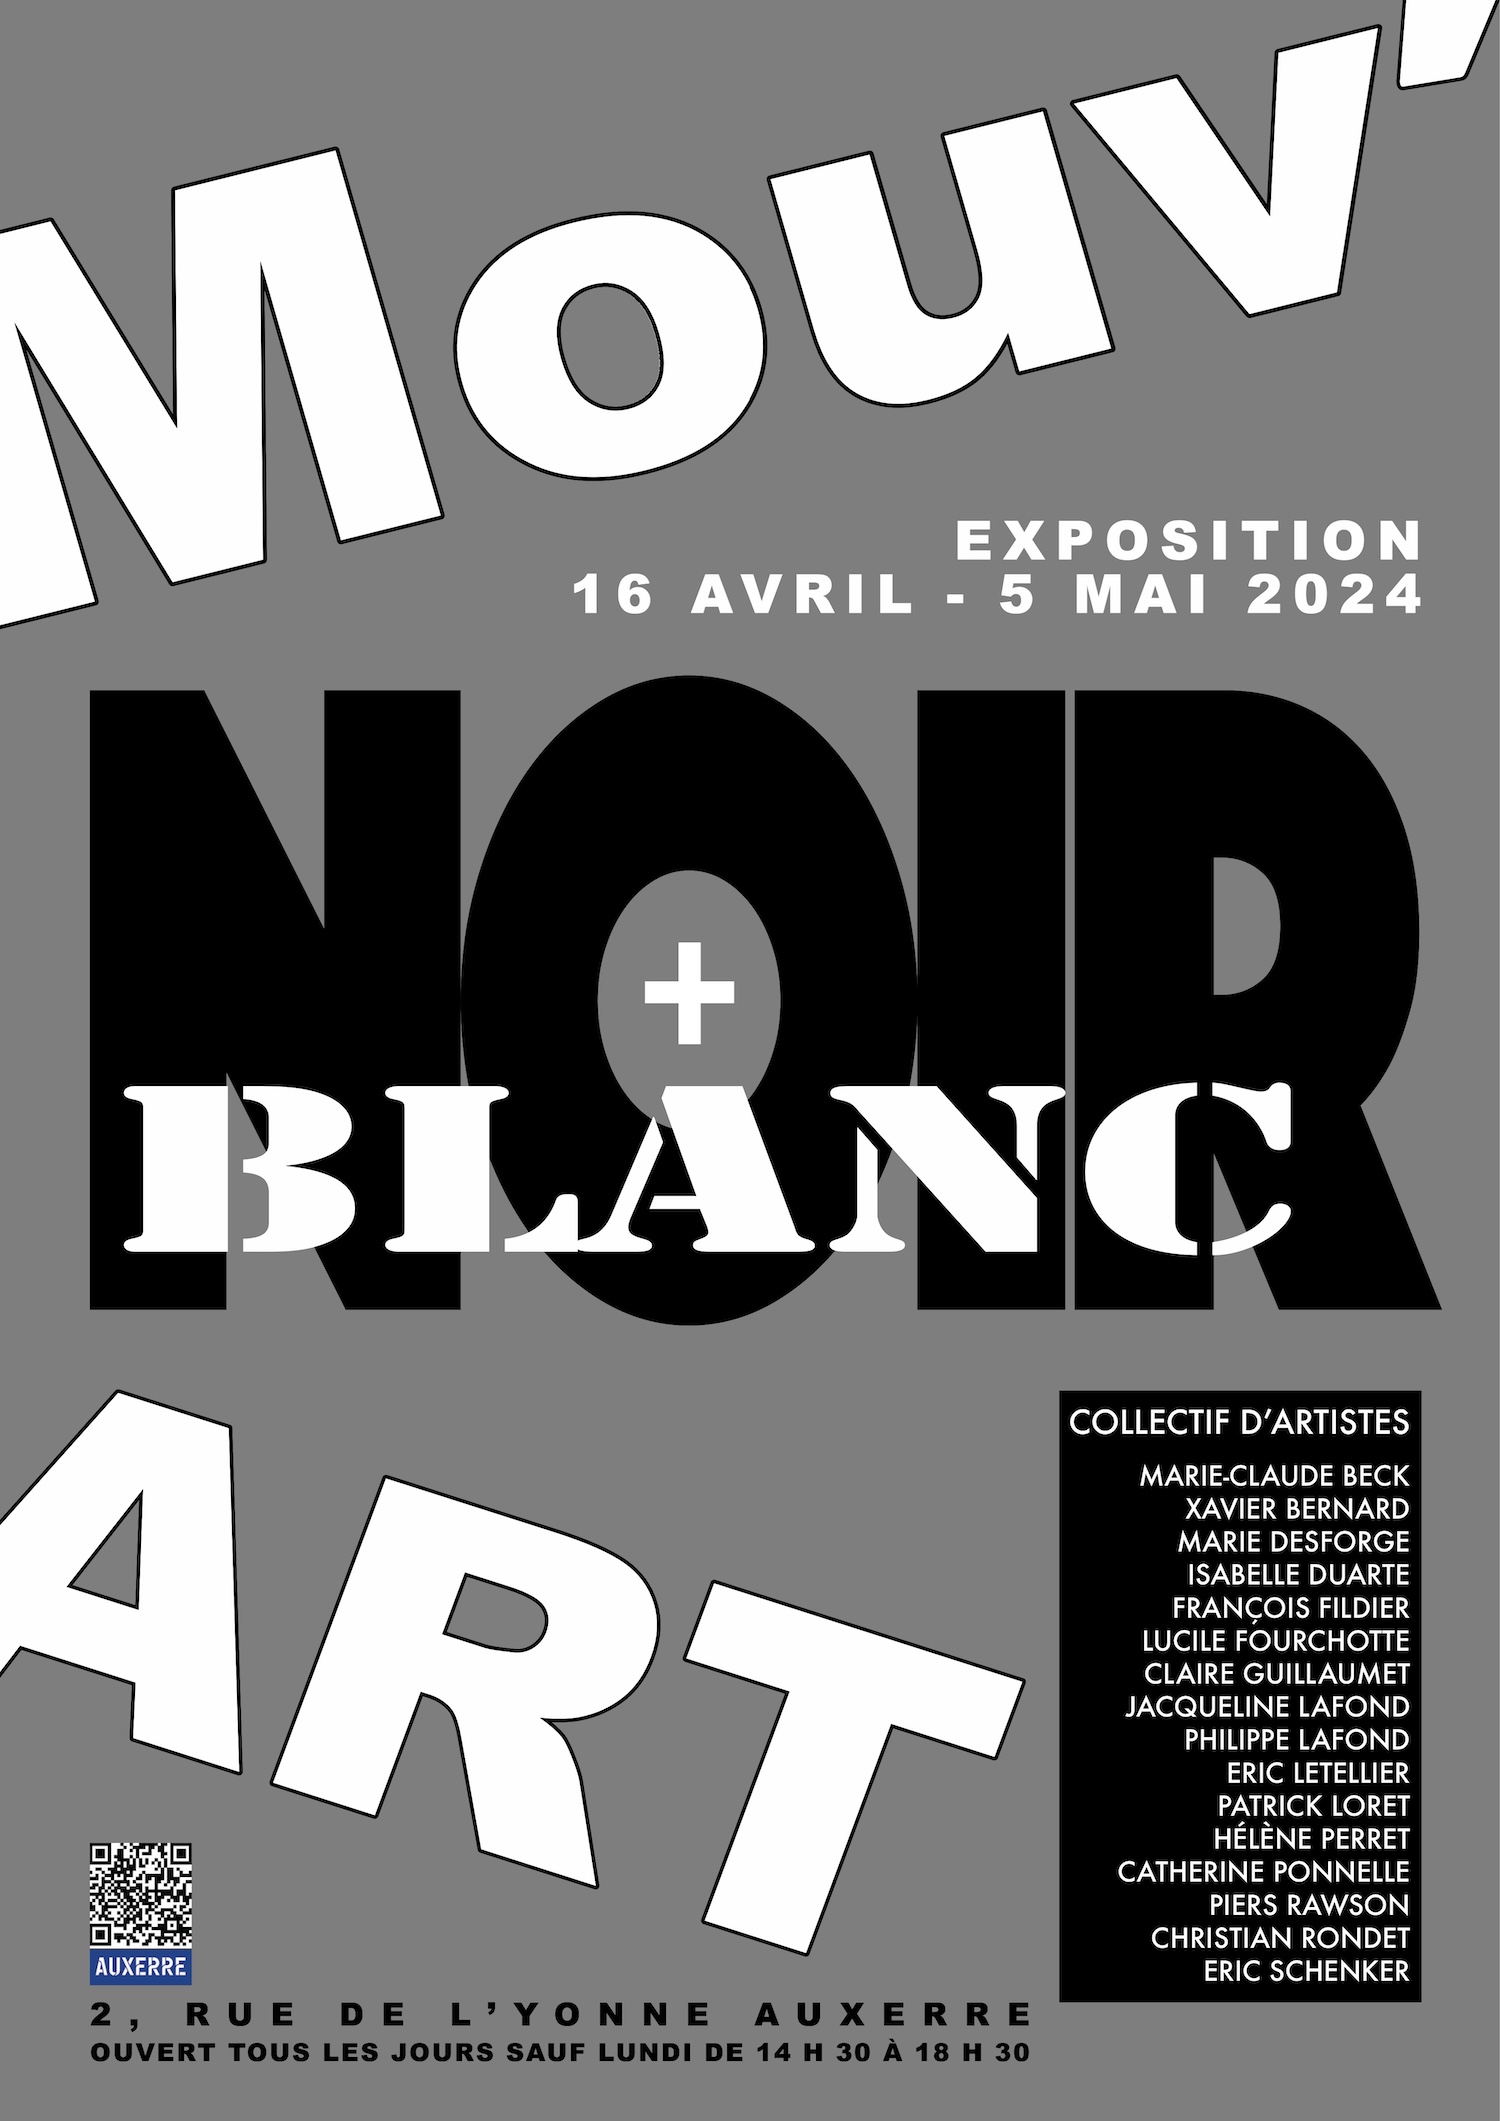 NOIR + BLANC